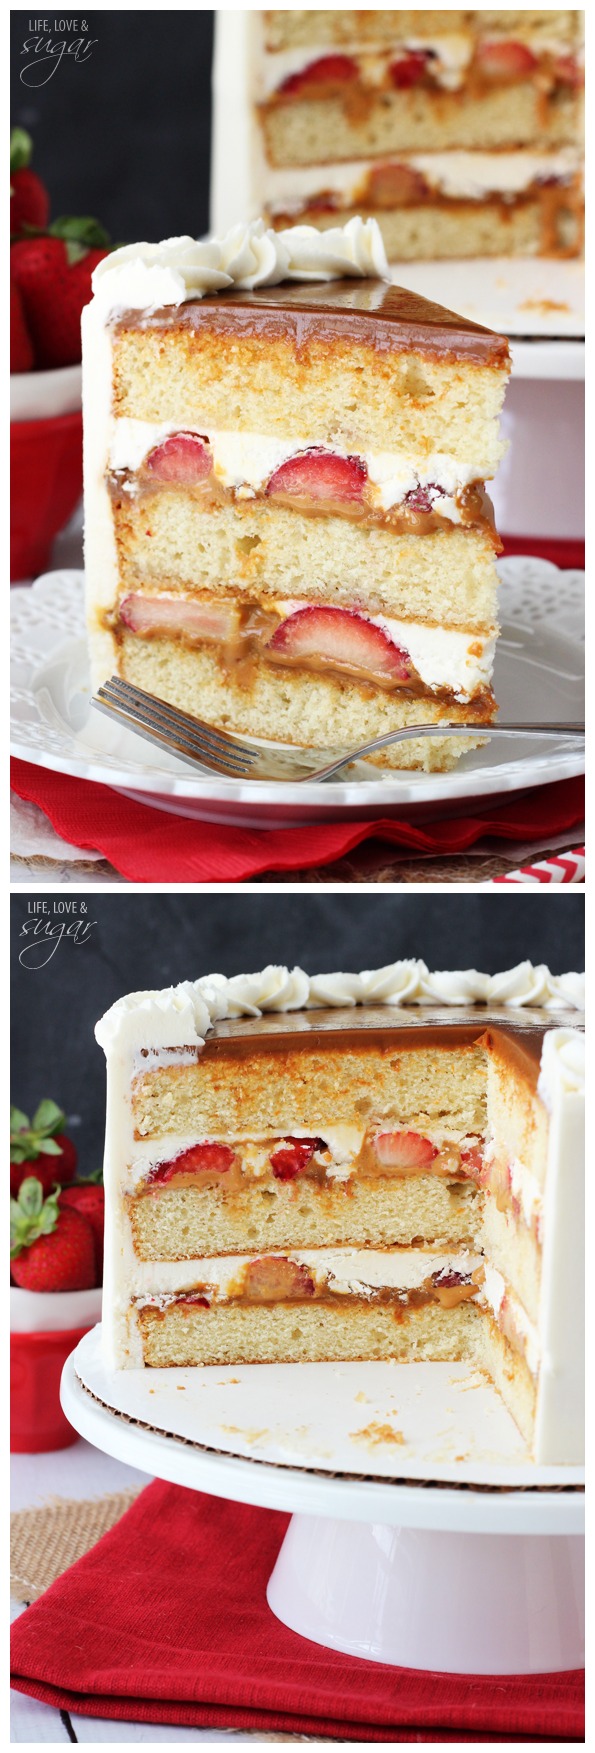 Strawberry Dulce De Leche Cake